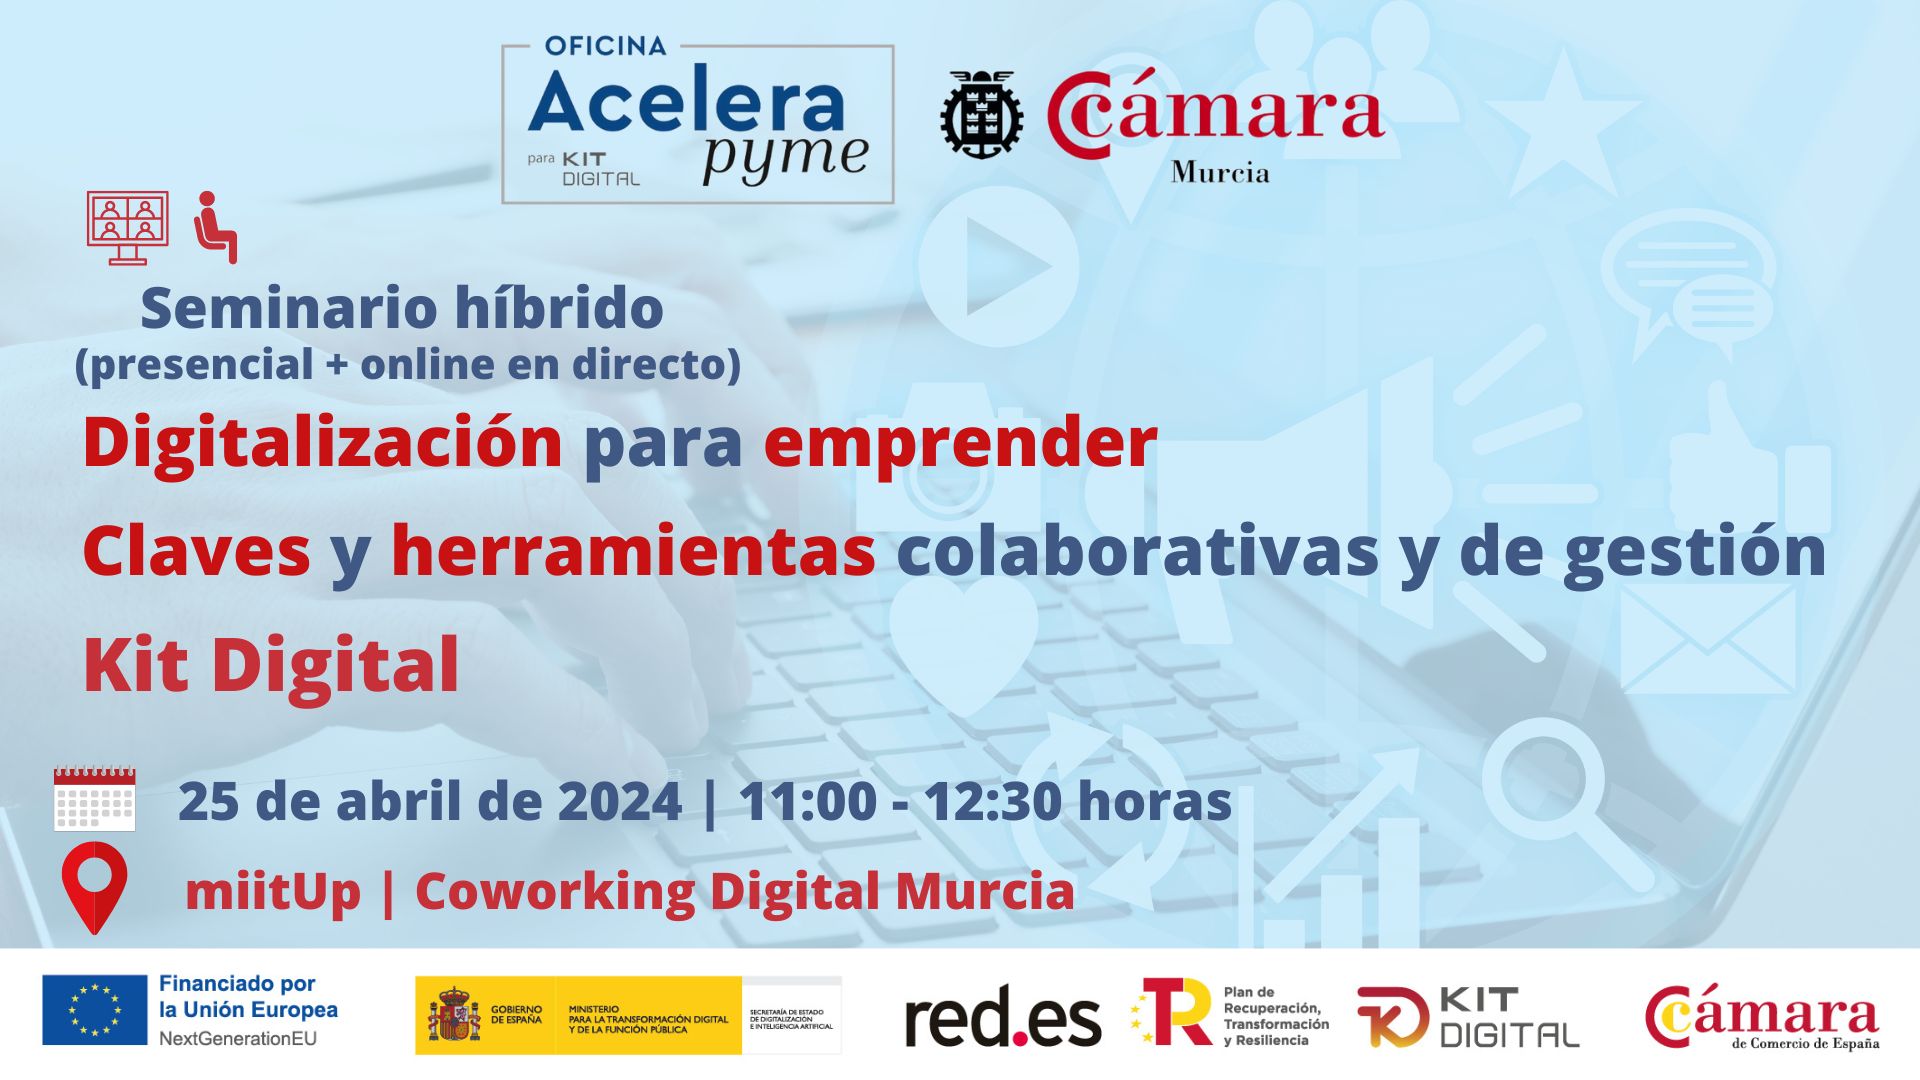 Oficina Acelera Pyme | Seminario híbrido | Digitalizacion para emprender. Claves y herramientas colaborativas y de gestión | Kit Digital | Cámara de Comercio de Murcia